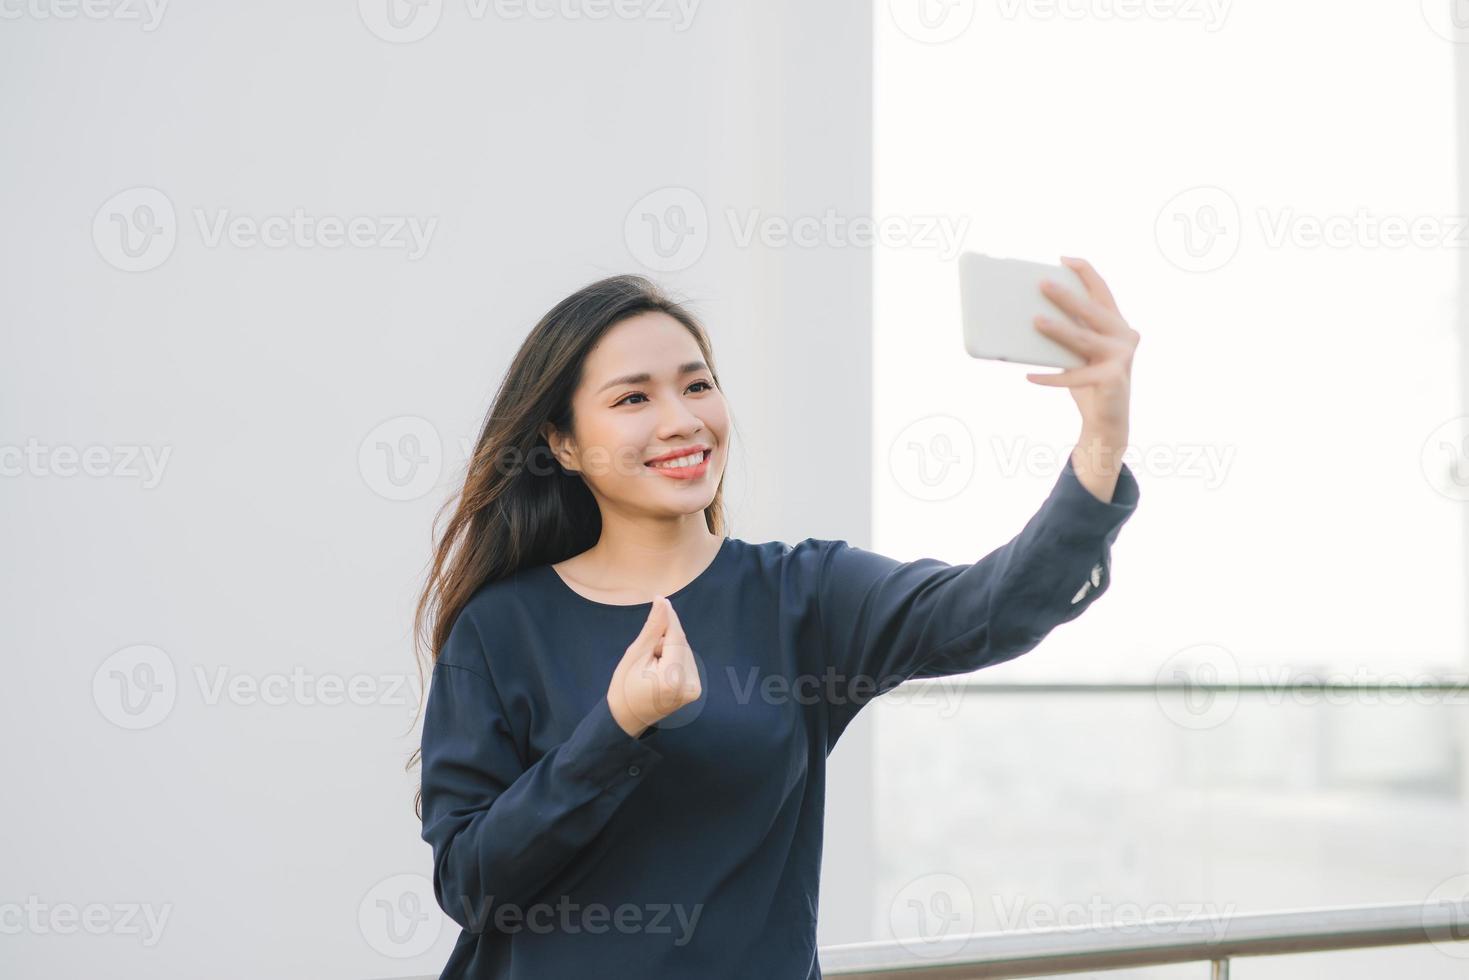 détendu et joyeux. travail et vacances. portrait extérieur d'une jeune femme heureuse utilisant un smartphone, faisant une photo de selfie et vous regardant sur la terrasse avec une belle vue sur la ville.